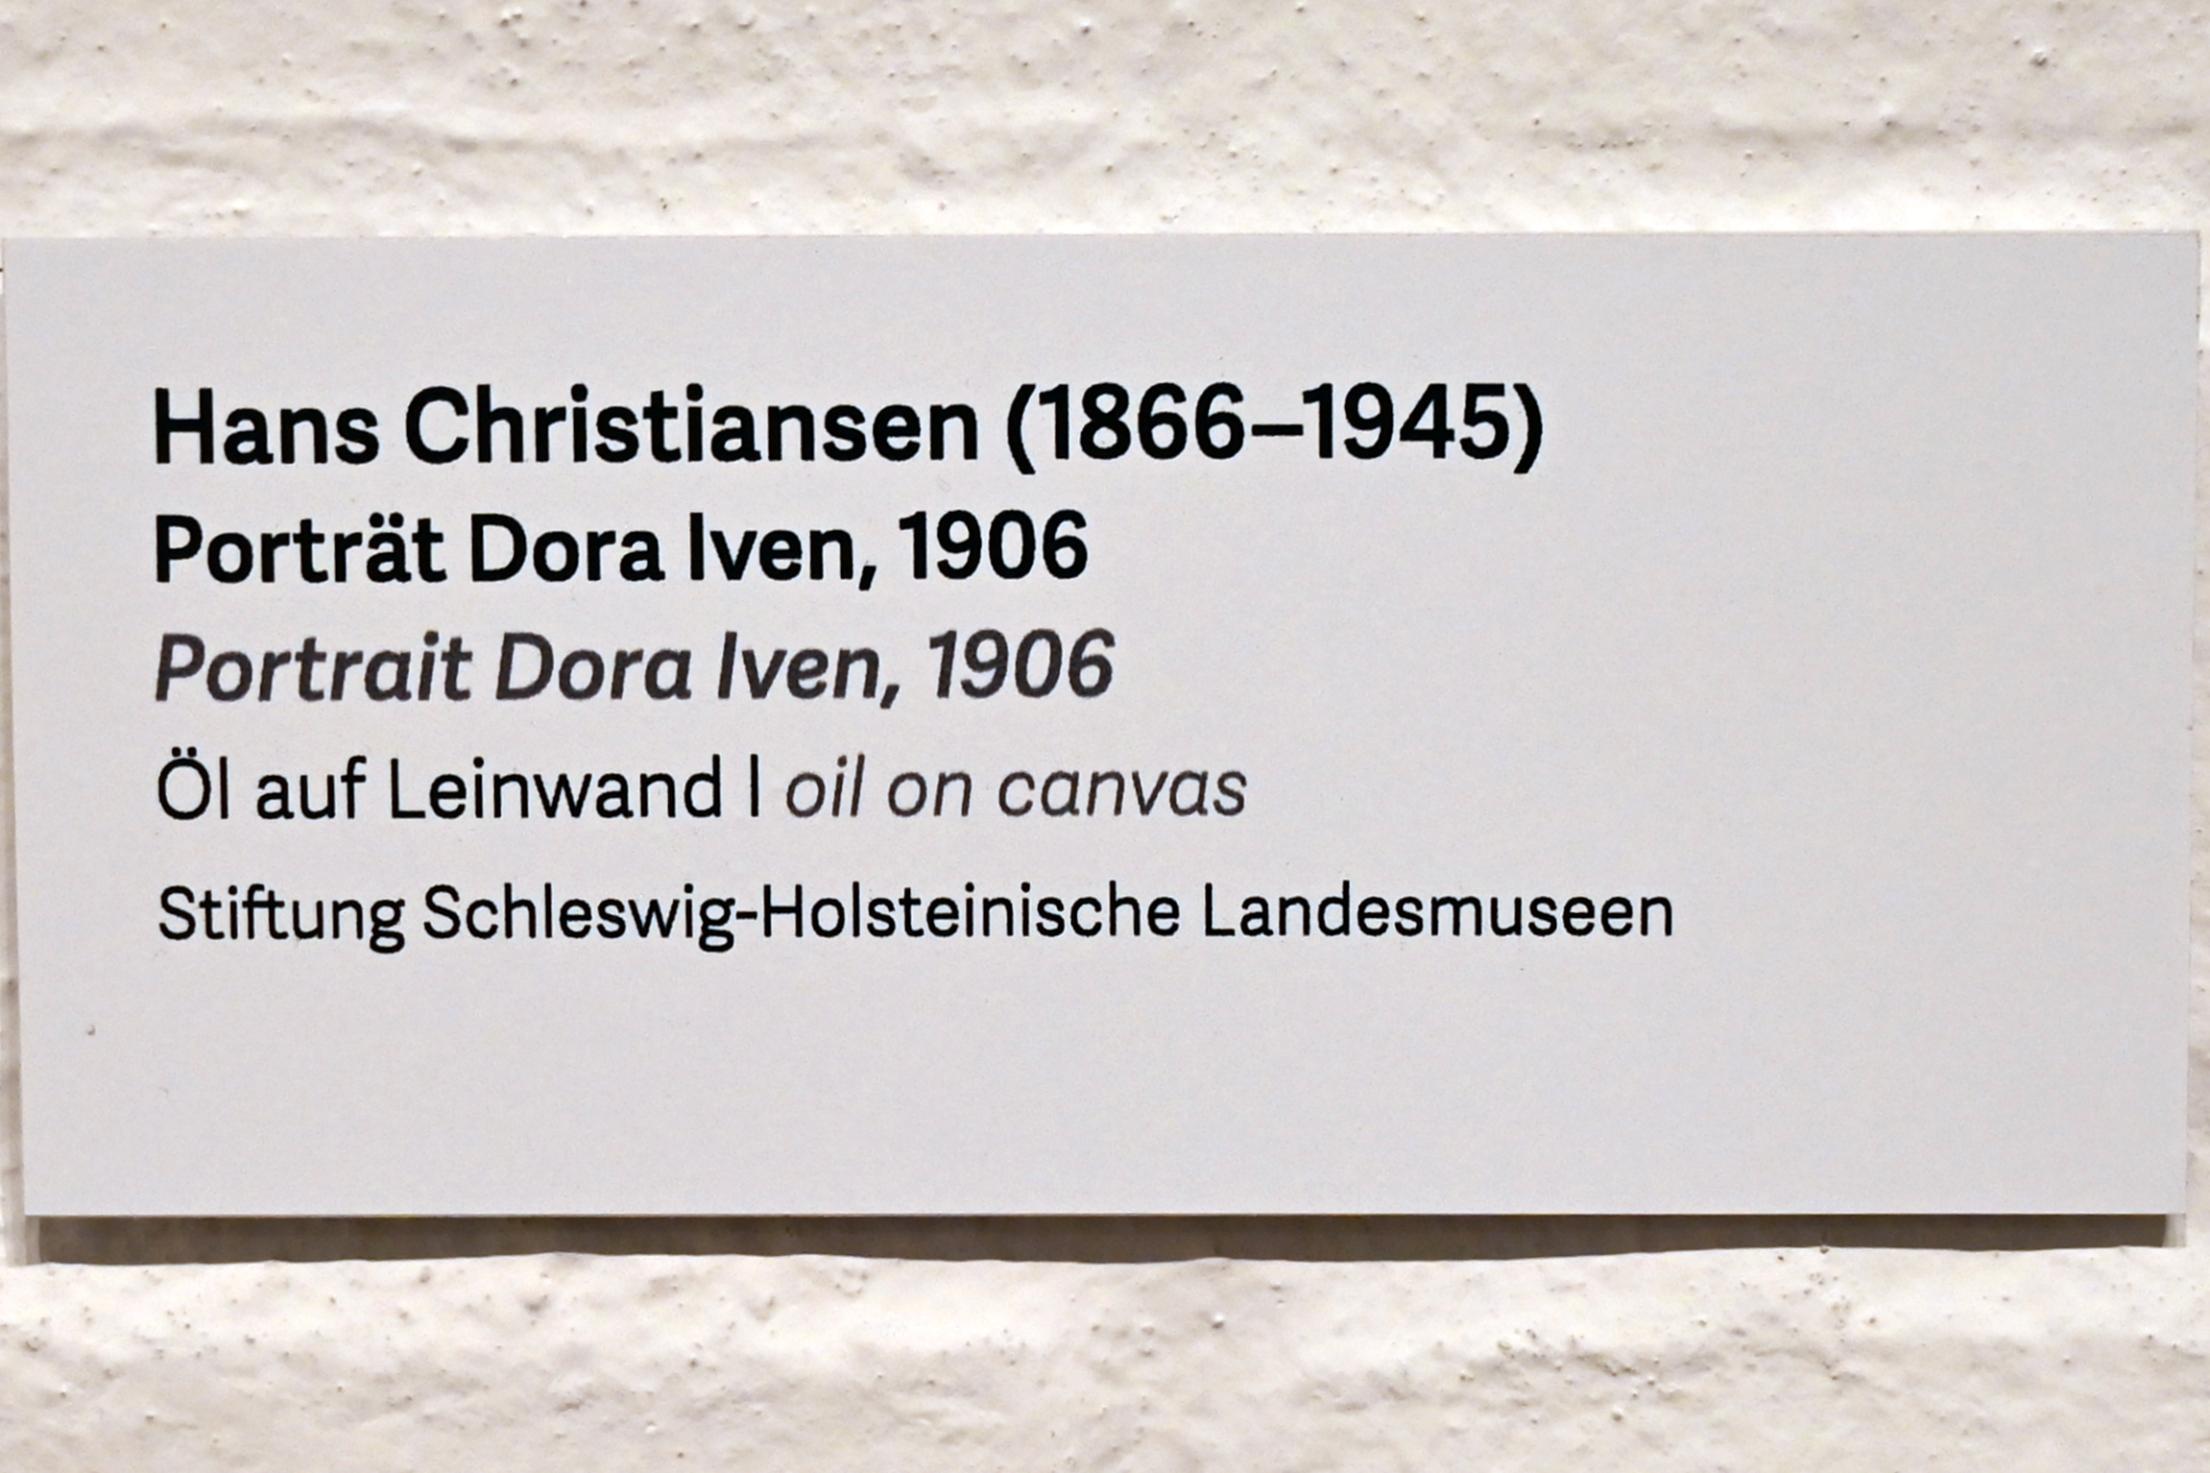 Hans Christiansen (1900–1920), Porträt Dora Iven, Schleswig, Landesmuseum für Kunst und Kulturgeschichte, Kunst im 20. Jh., 1906, Bild 2/2